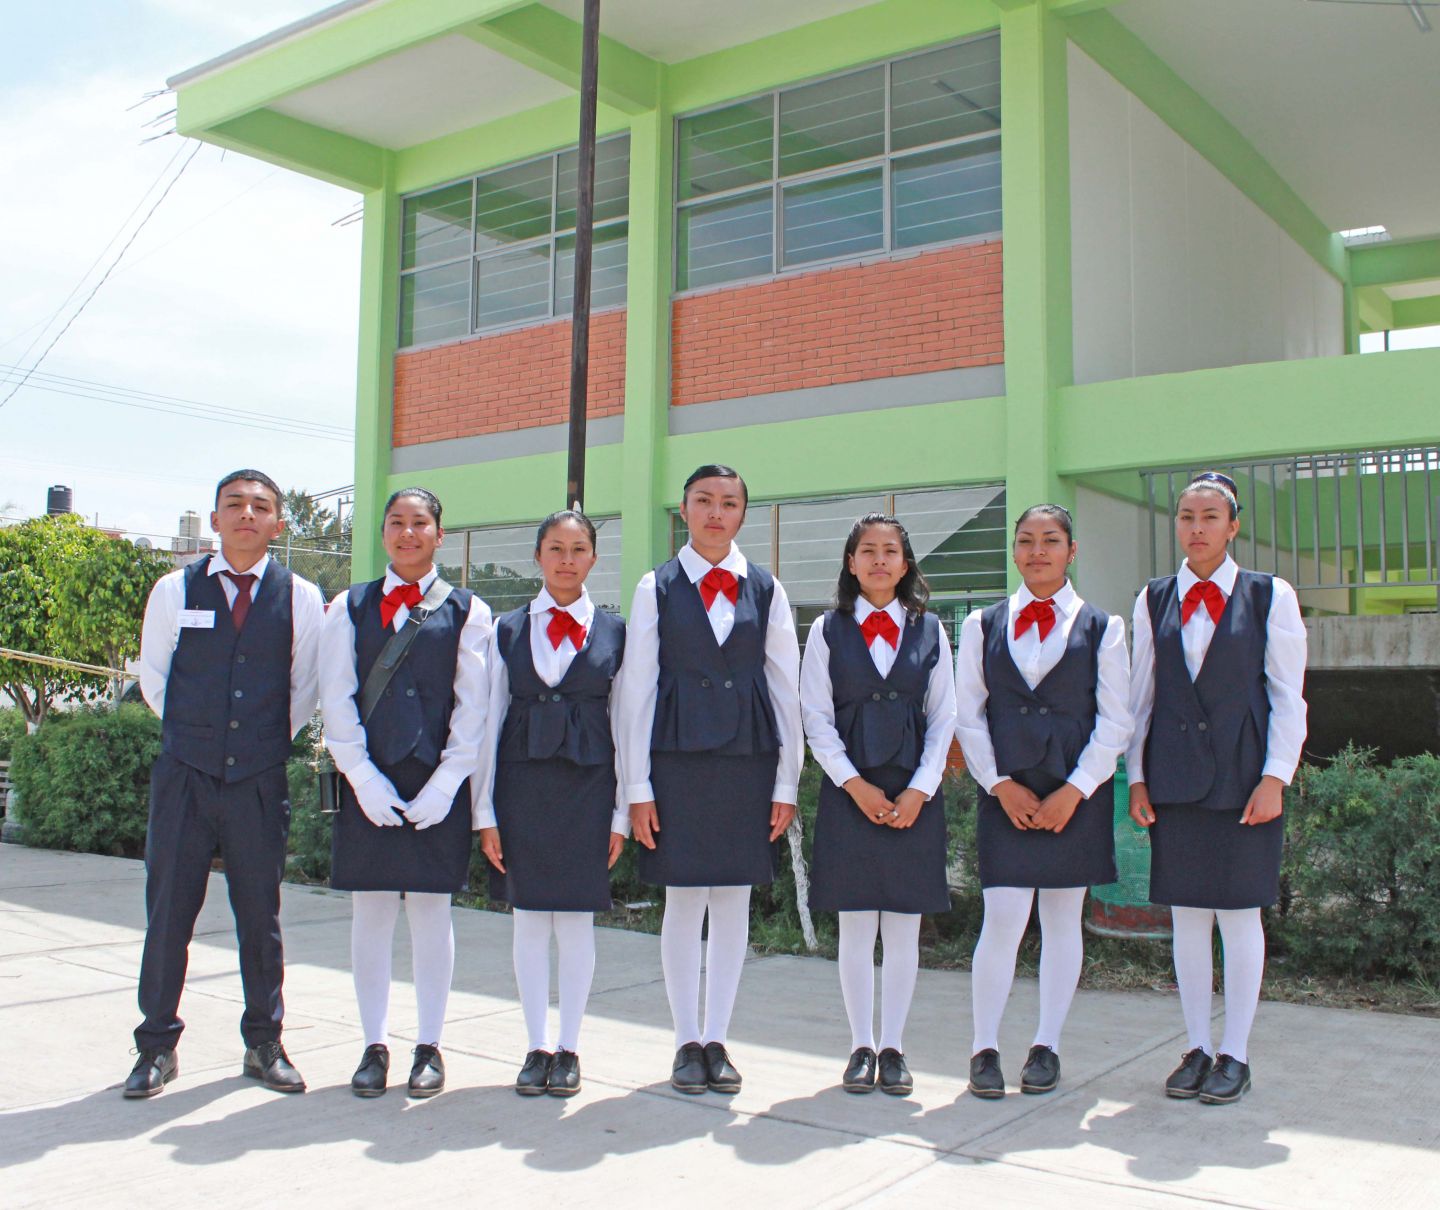 Brindamos mejores espacios en escuelas de Chimalhuacán